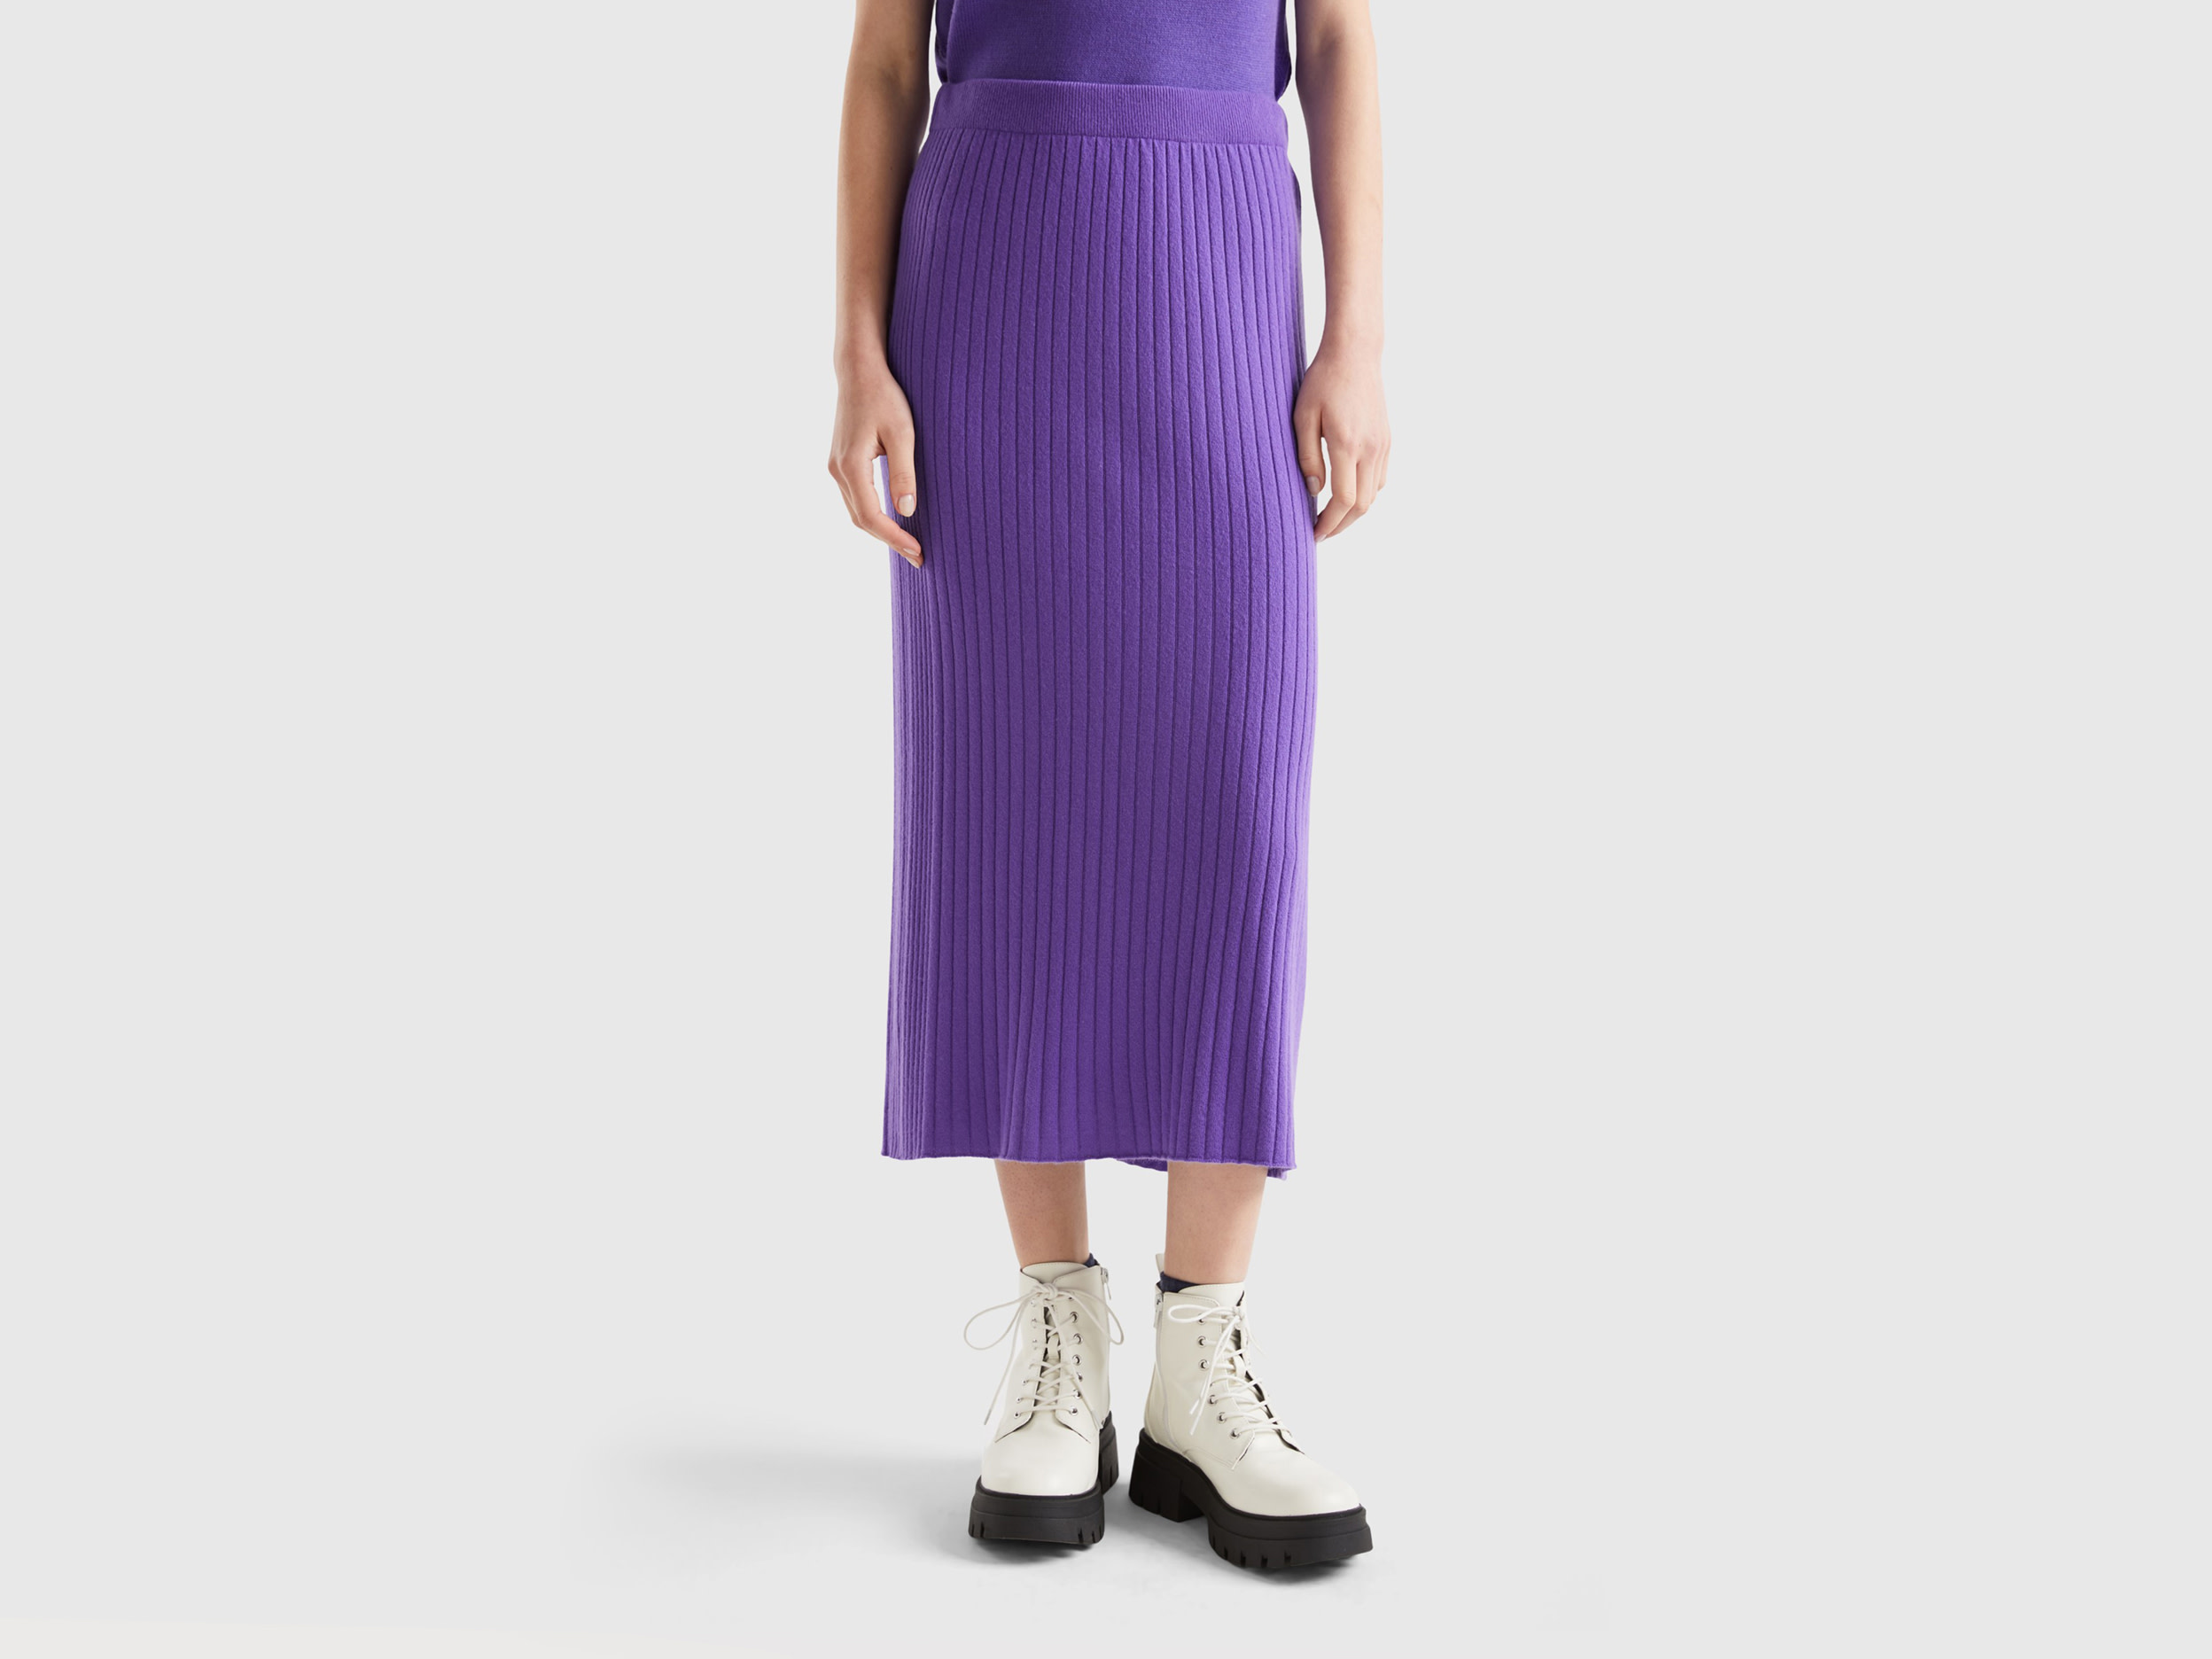 Benetton, Knit Pencil Skirt, size S, Violet, Women